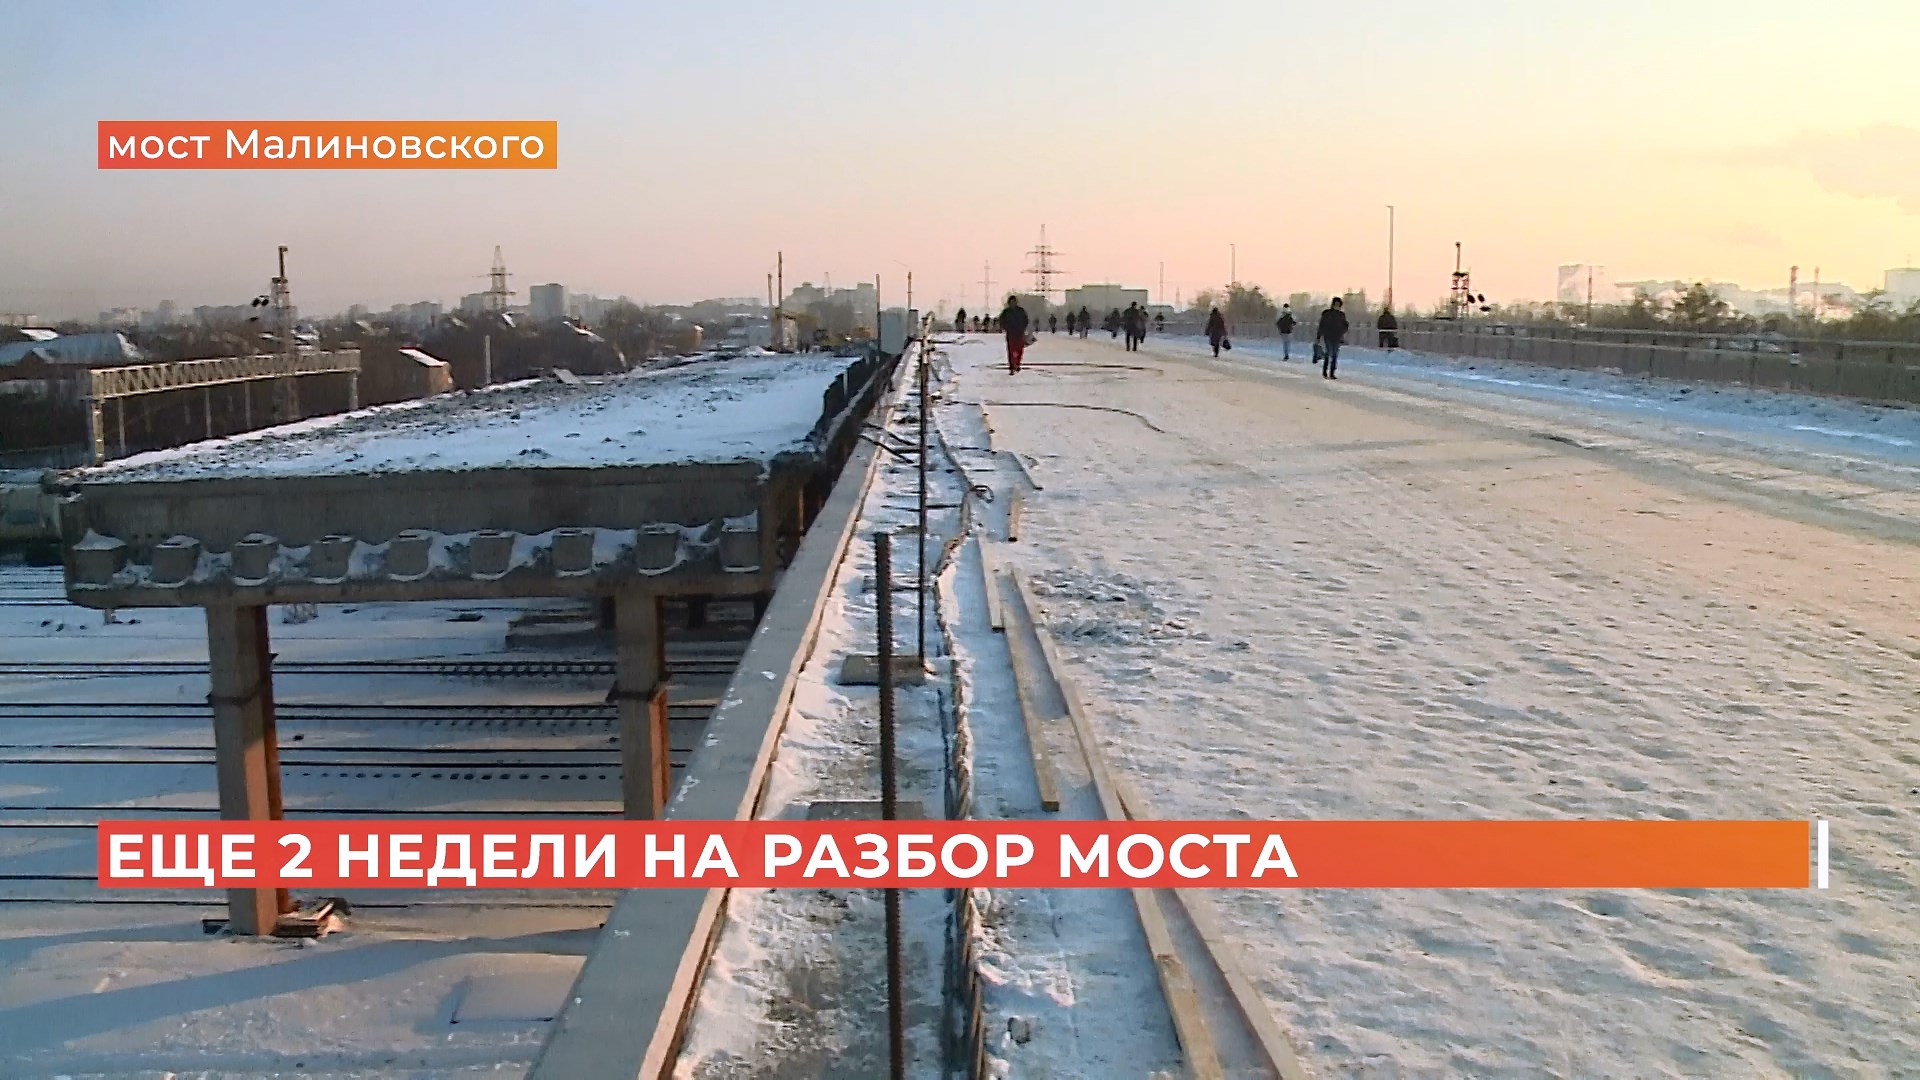 Старый мост Малиновского полностью разберут через две недели